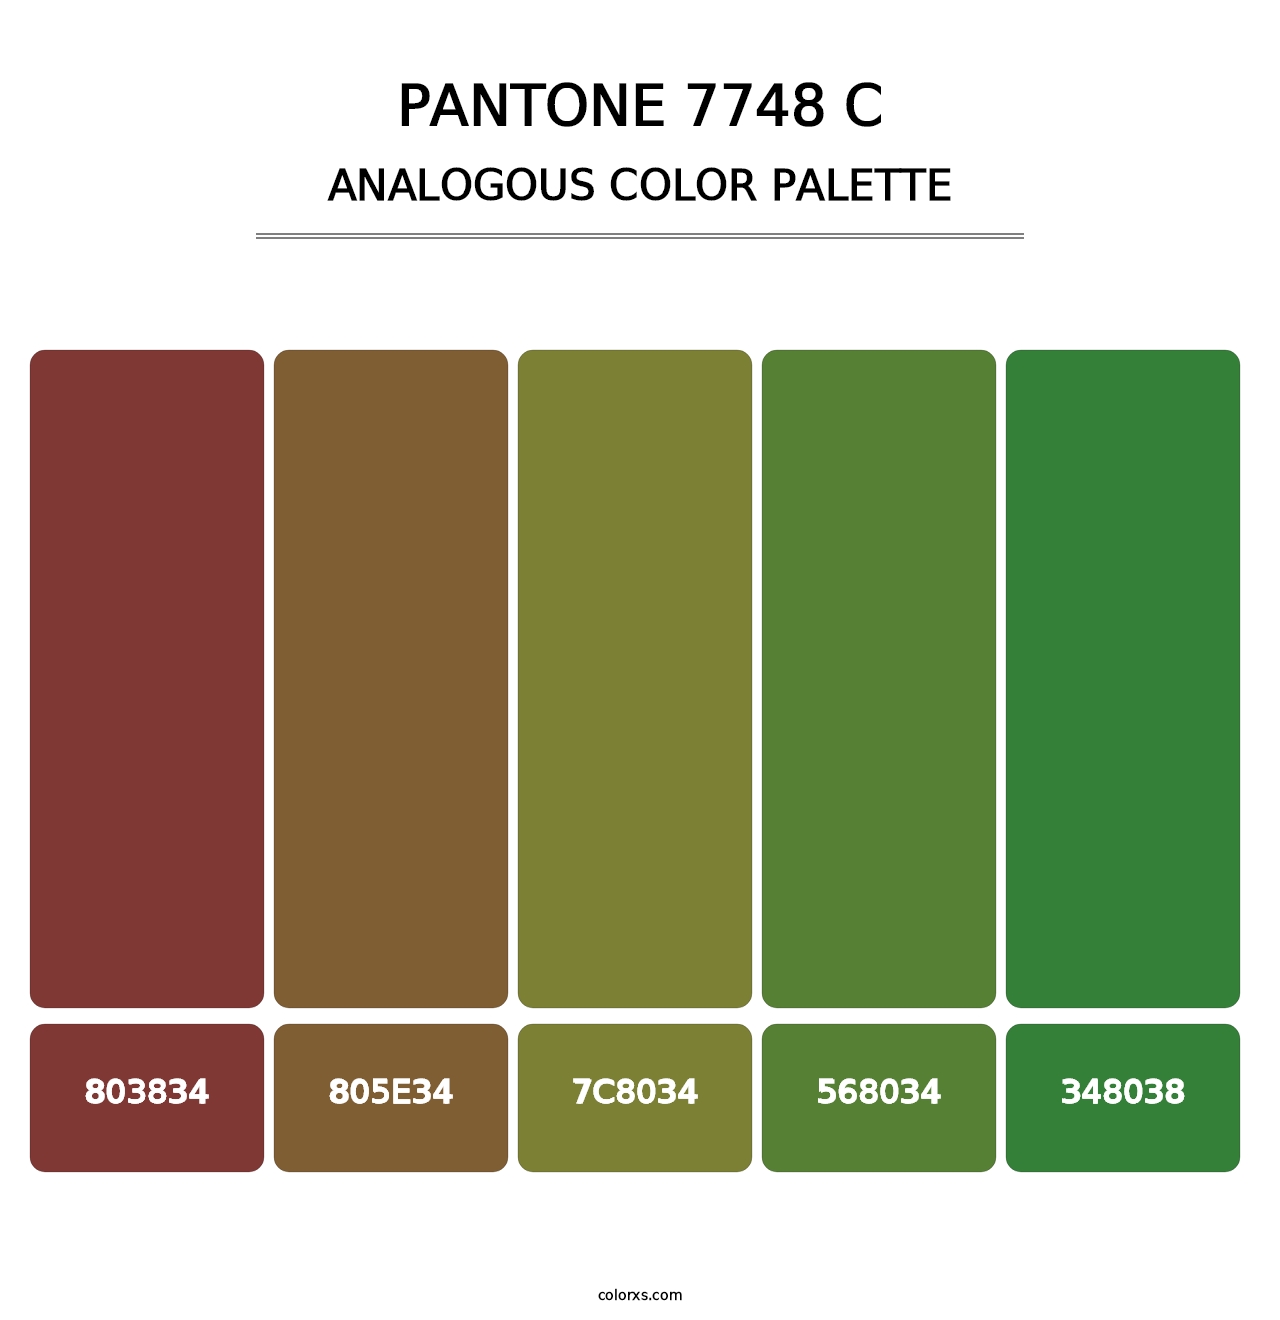 PANTONE 7748 C - Analogous Color Palette